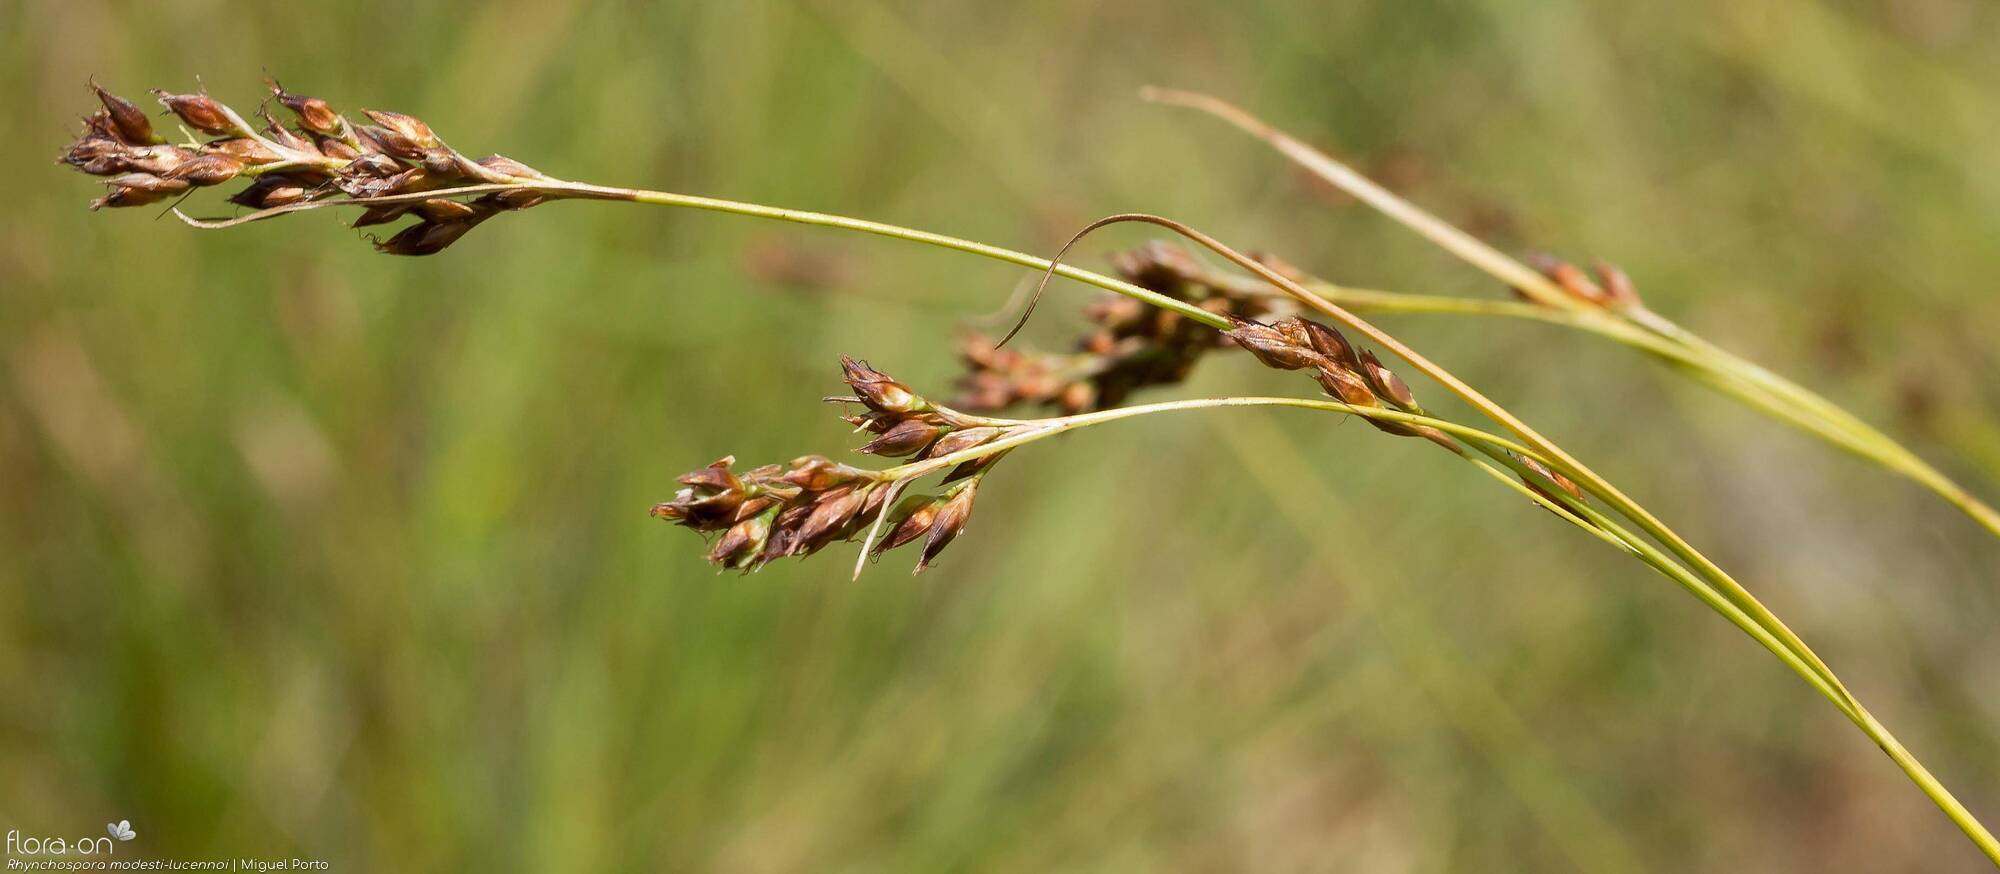 Rhynchospora modesti-lucennoi - Flor (geral) | Miguel Porto; CC BY-NC 4.0